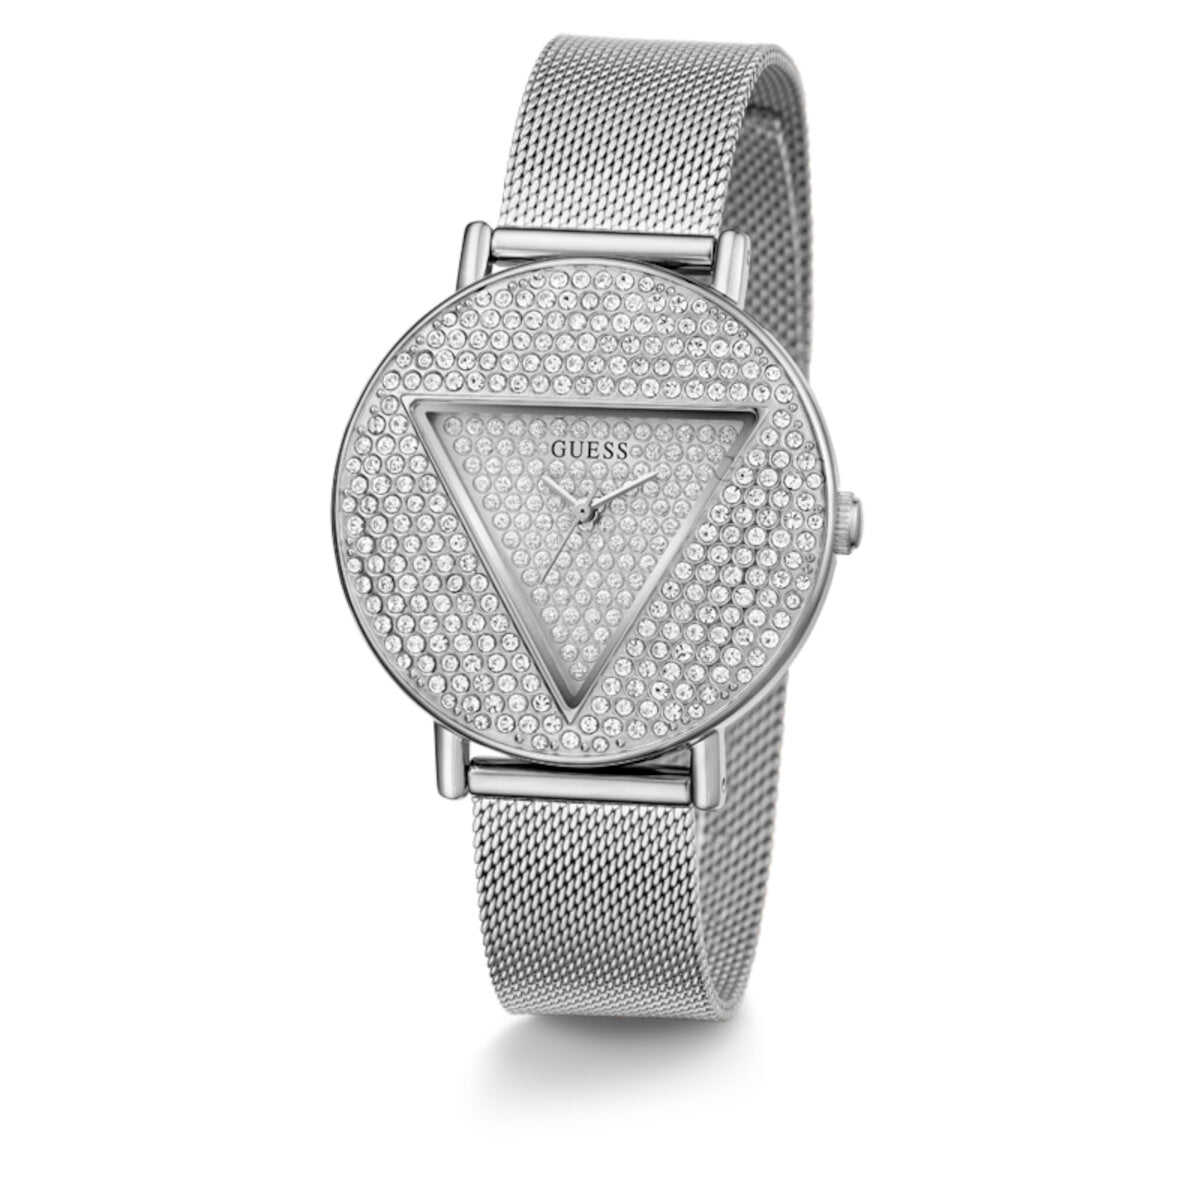 Reloj Guess de mujer Iconic color plata